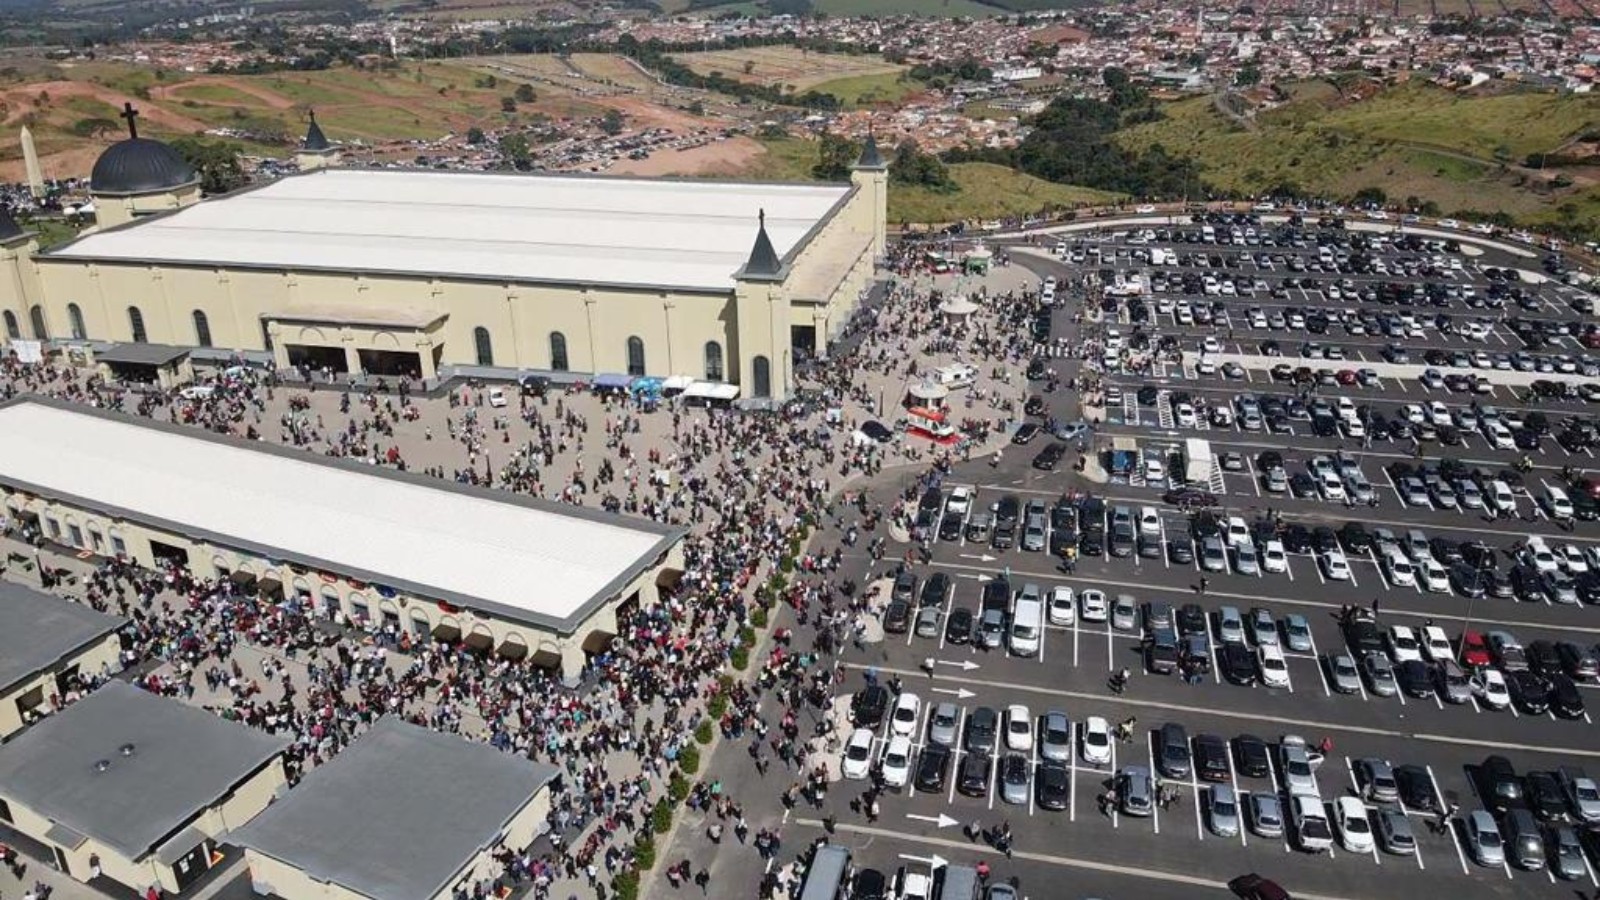 Santuário deve receber cerca de 50 mil pessoas durante celebrações à Santa Rita de Cássia, em MG